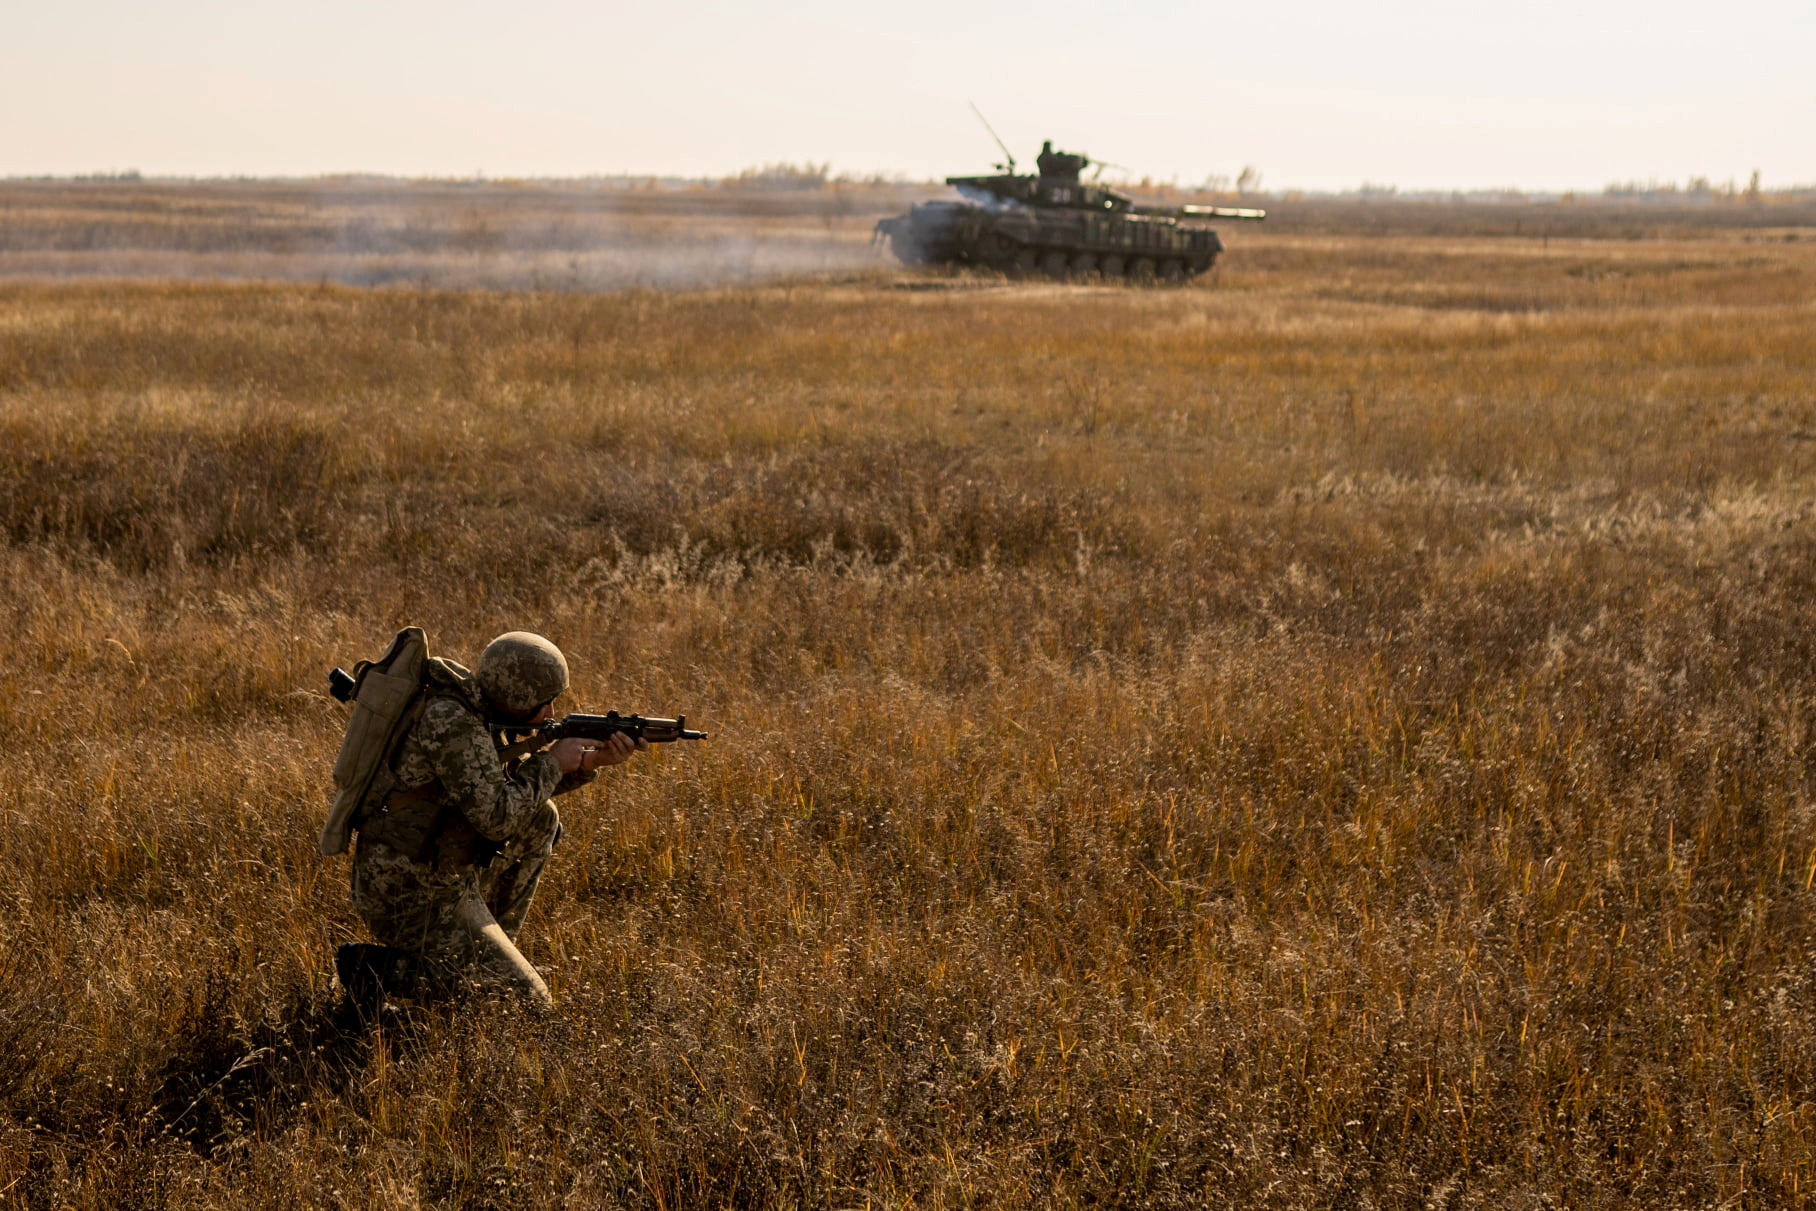 Një ushtar i Forcave të Armatosura të Ukrainës merr pjesë në stërvitjet ushtarake në një terren stërvitor pranë kufirit me Krimenë e aneksuar nga Rusia në rajonin Kherson, Ukrainë, në këtë foto fletëpalosje të lëshuar nga shërbimi i shtypit i Shtabit të Përgjithshëm të Forcave të Armatosura të Ukrainës më 17 nëntor, 2021. Shërbimi i Shtypit i Shtabit të Përgjithshëm të Forcave të Armatosura të Ukrainës/Fletore nëpërmjet REUTERS/File Foto